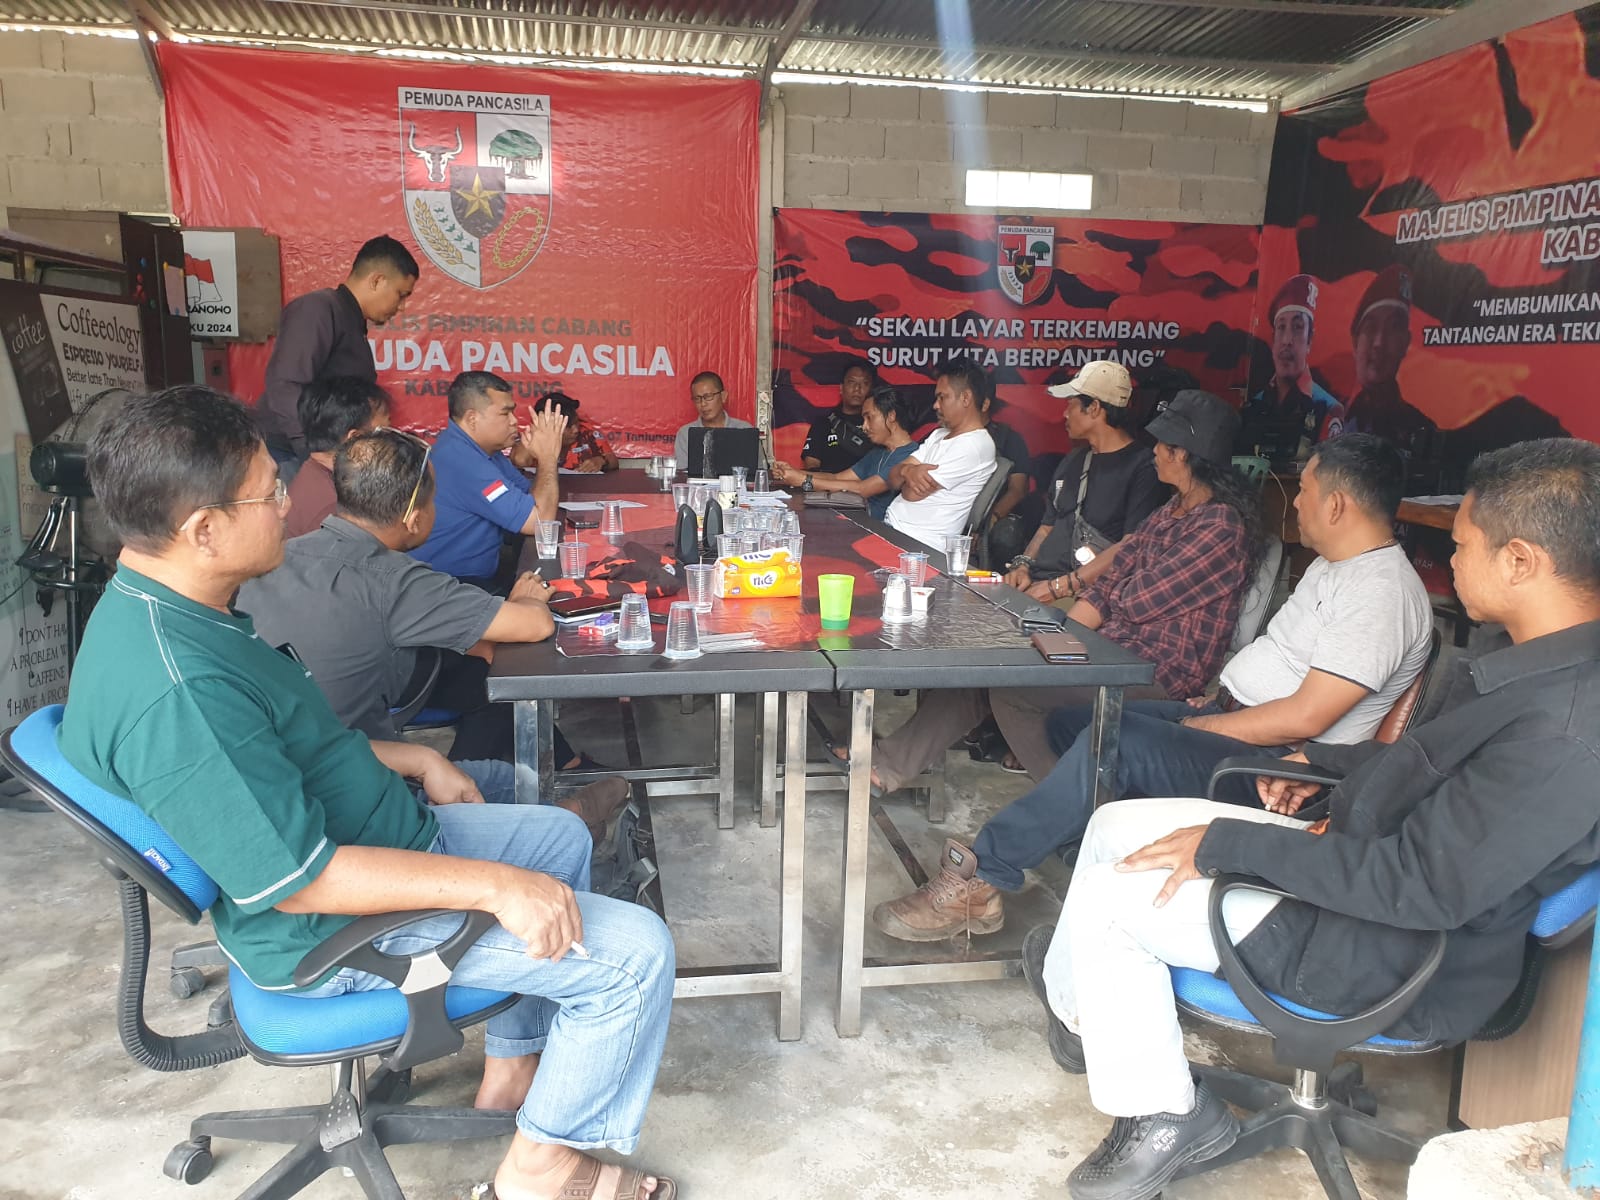 MPC Pemuda Pancasila Belitung Menyelenggarakan Rapat Konsolidasi Program/Kegiatan Yang Mendukung Percepatan Kemajuan Organisasi